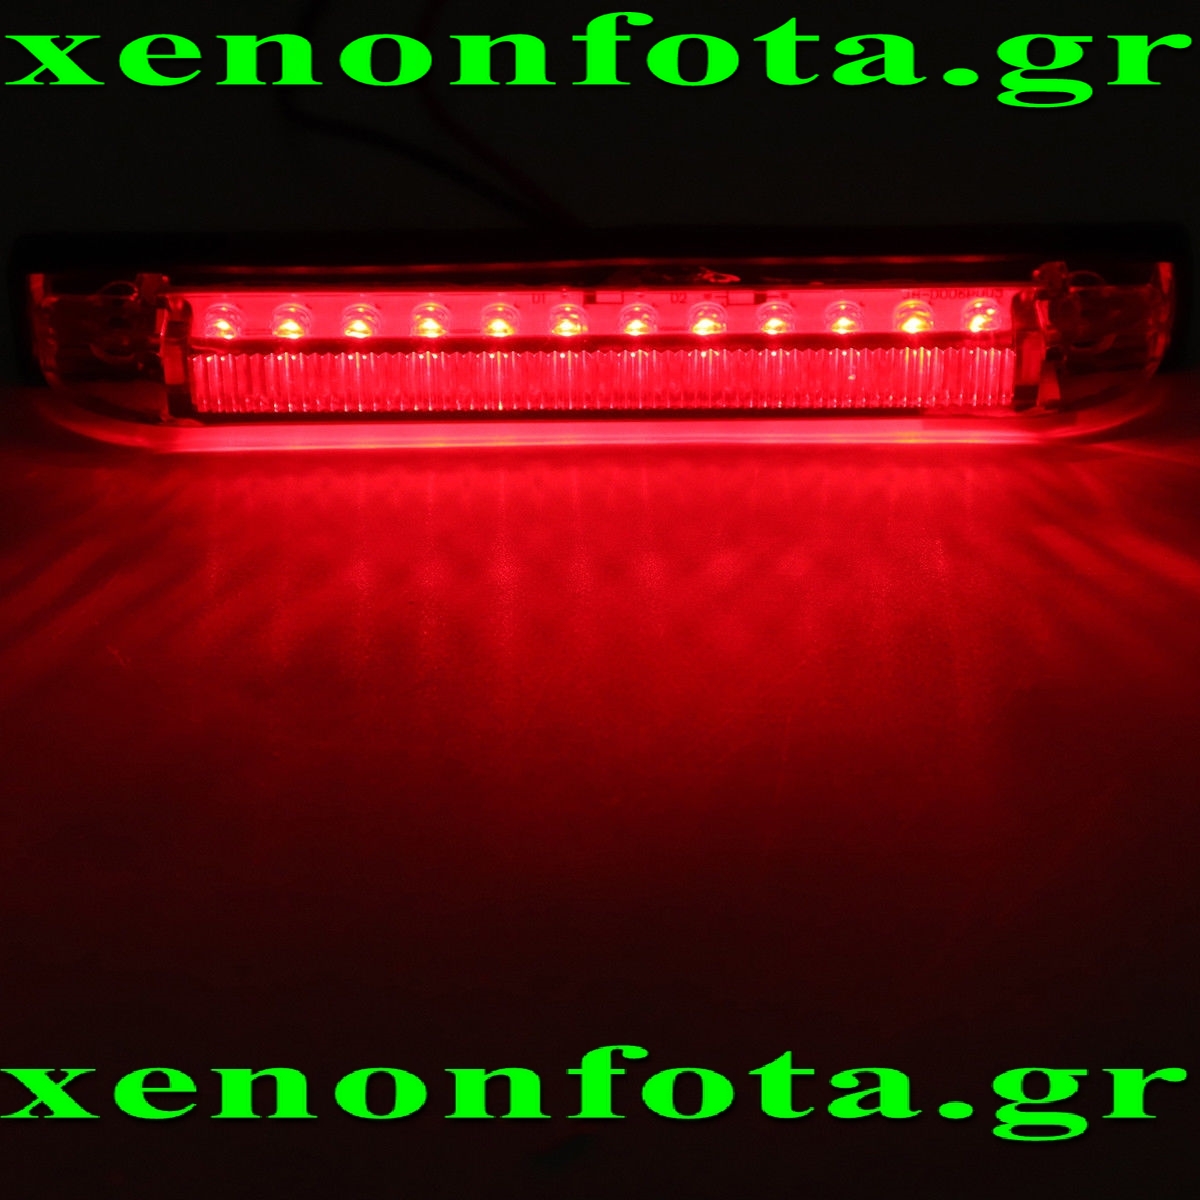 Led τρίτο στοπ  κόκκινο φως Κωδικός XF692 Τιμή: 12 ευρώ